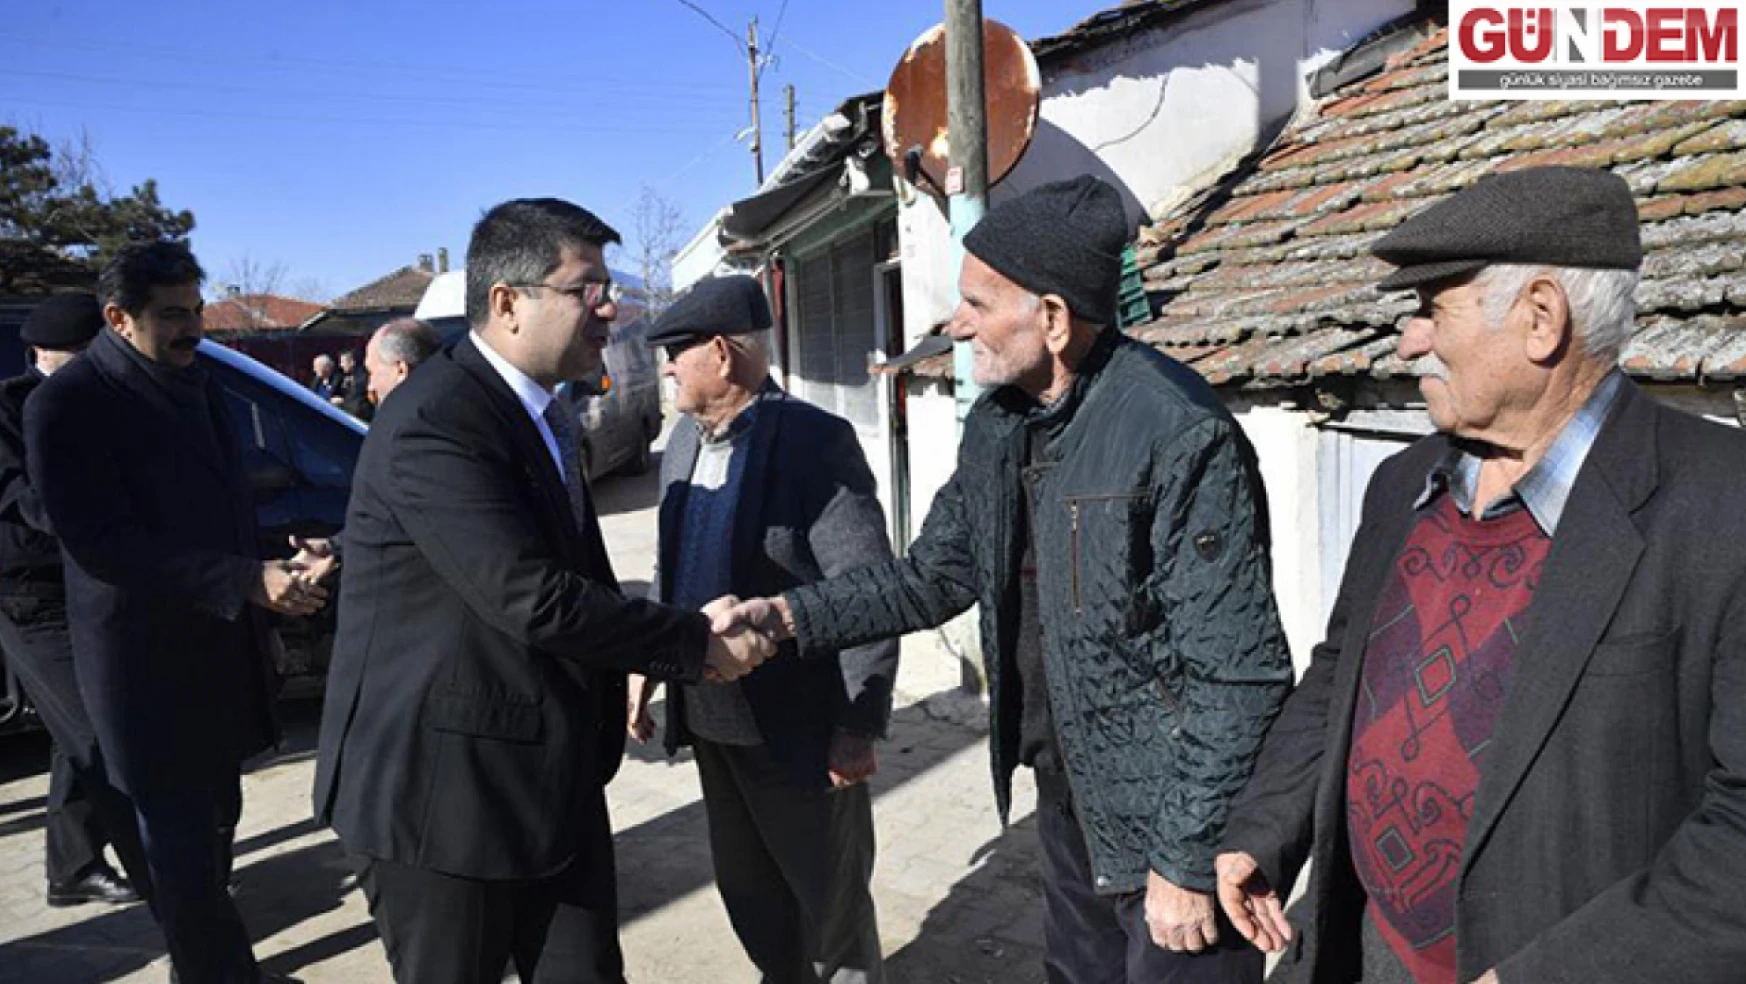 Edirne Valisi Kırbıyık köy ziyaretlerine devam ediyor